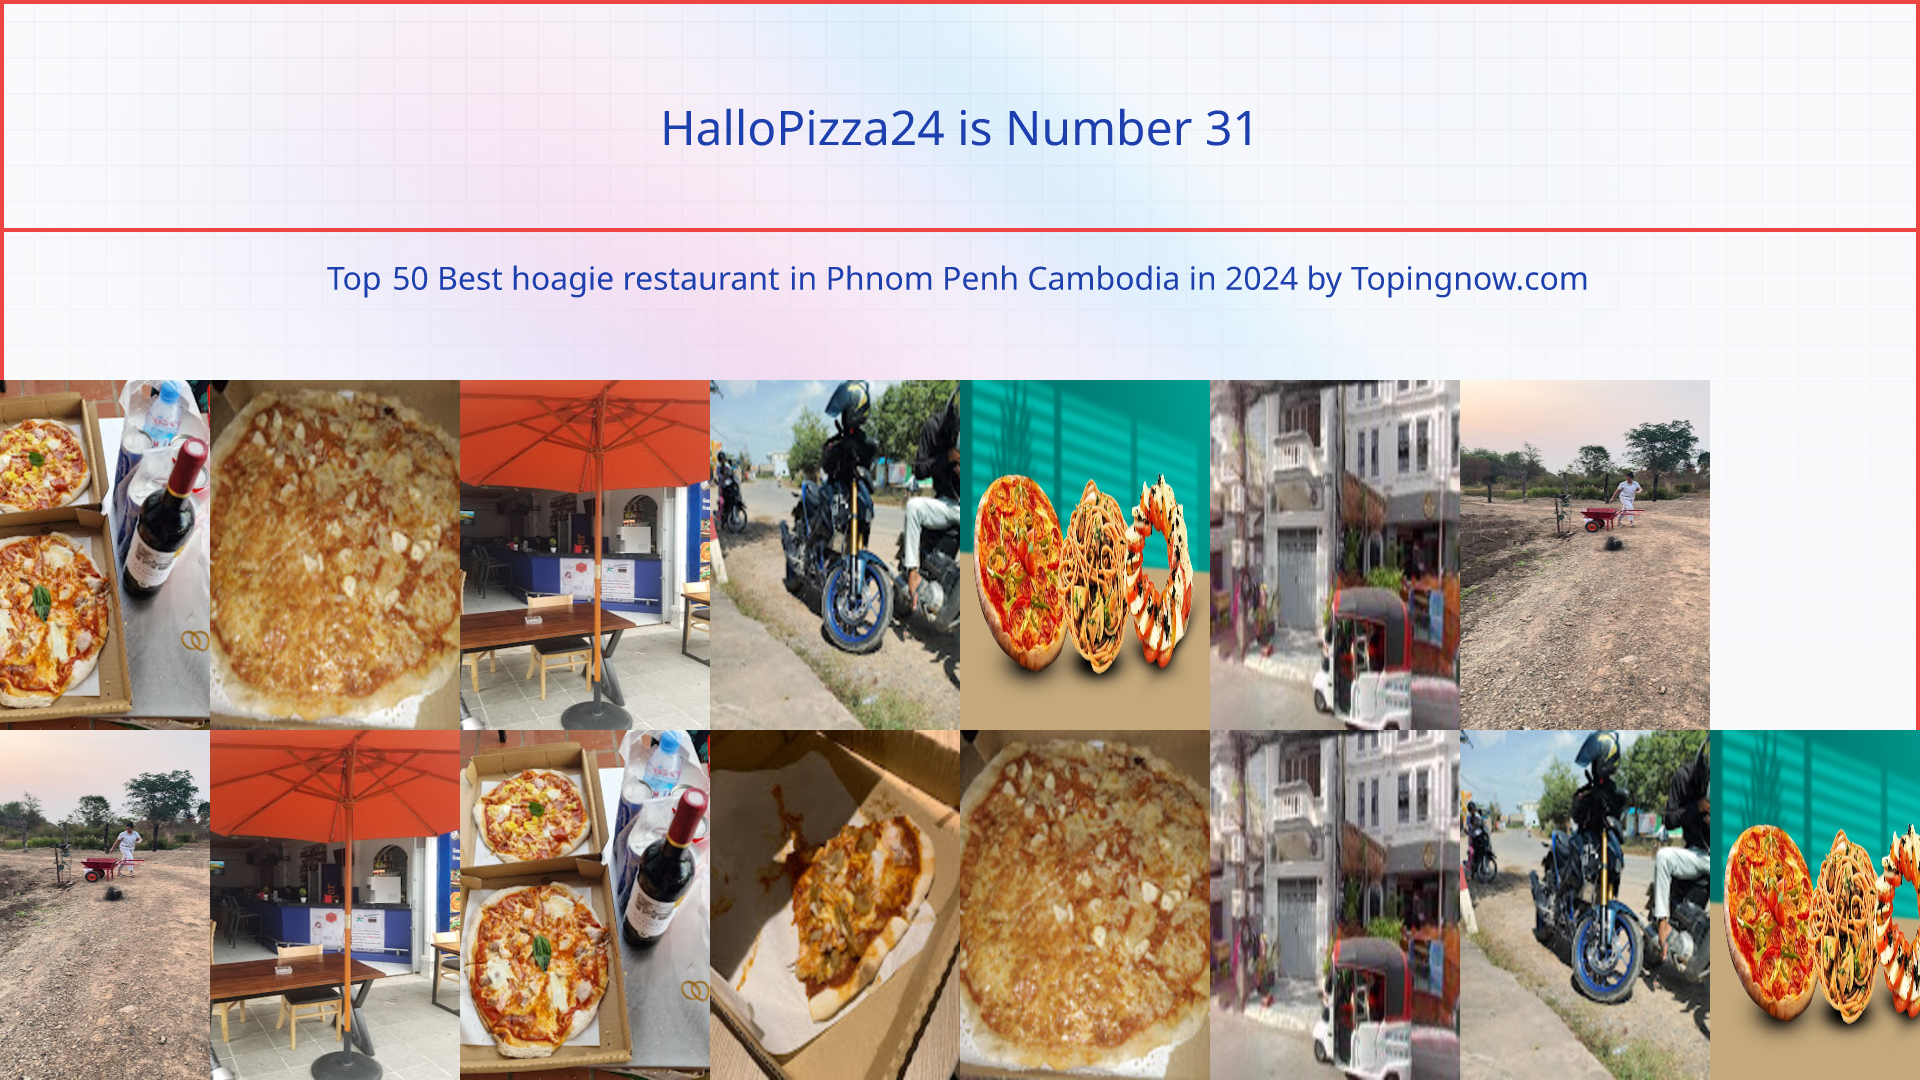 HalloPizza24: Top 50 Best hoagie restaurant in Phnom Penh Cambodia in 2024